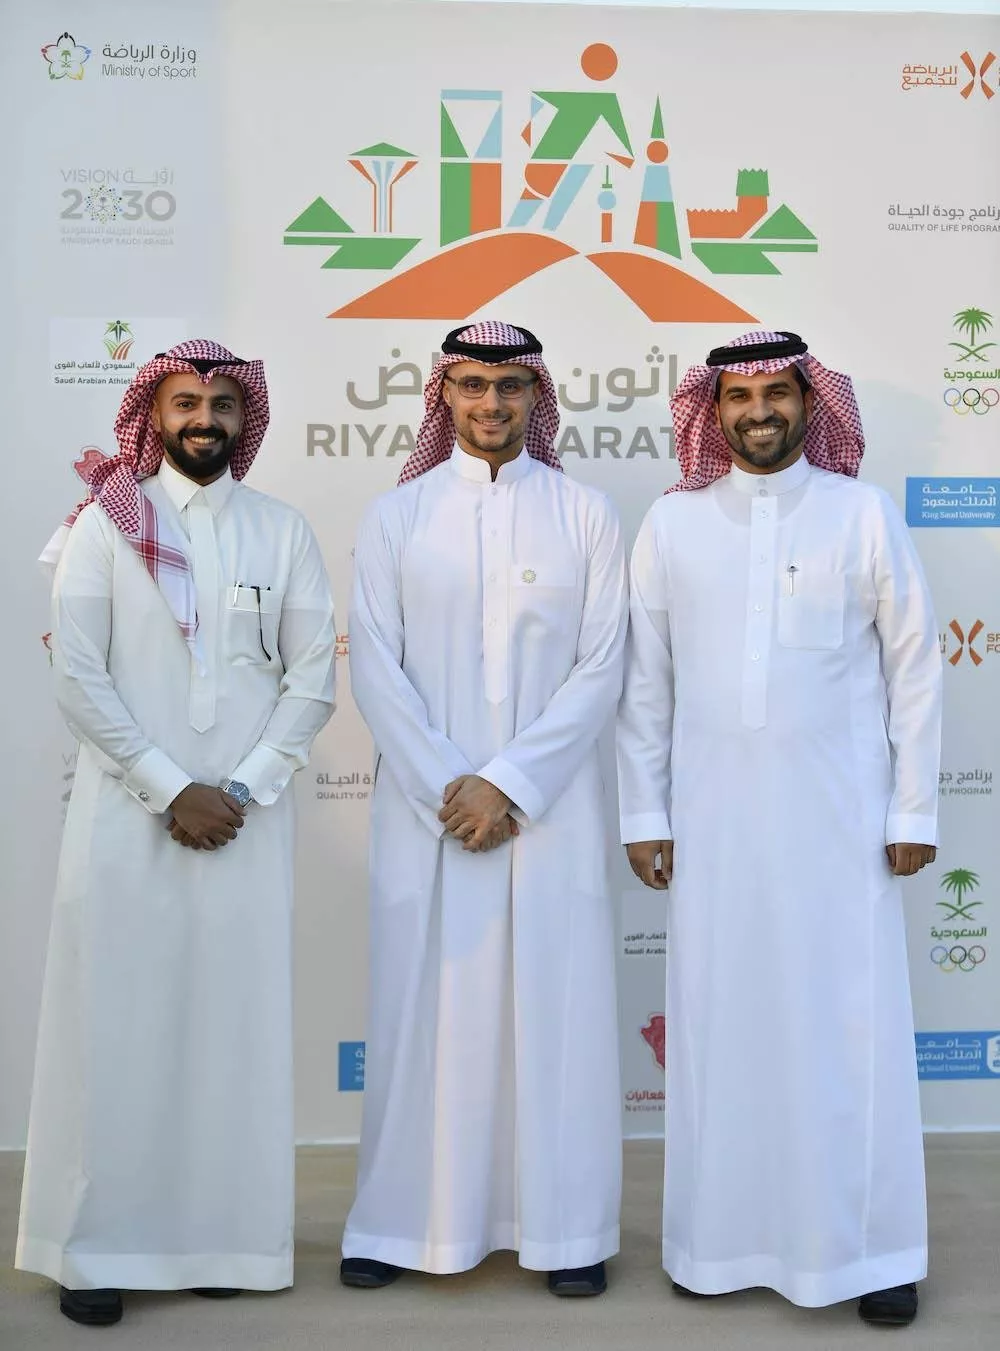 المملكة العربية السعودية - ماراثون الرياض 2022 - رؤية 2030 - saudi arabia riyadh marathon 2022